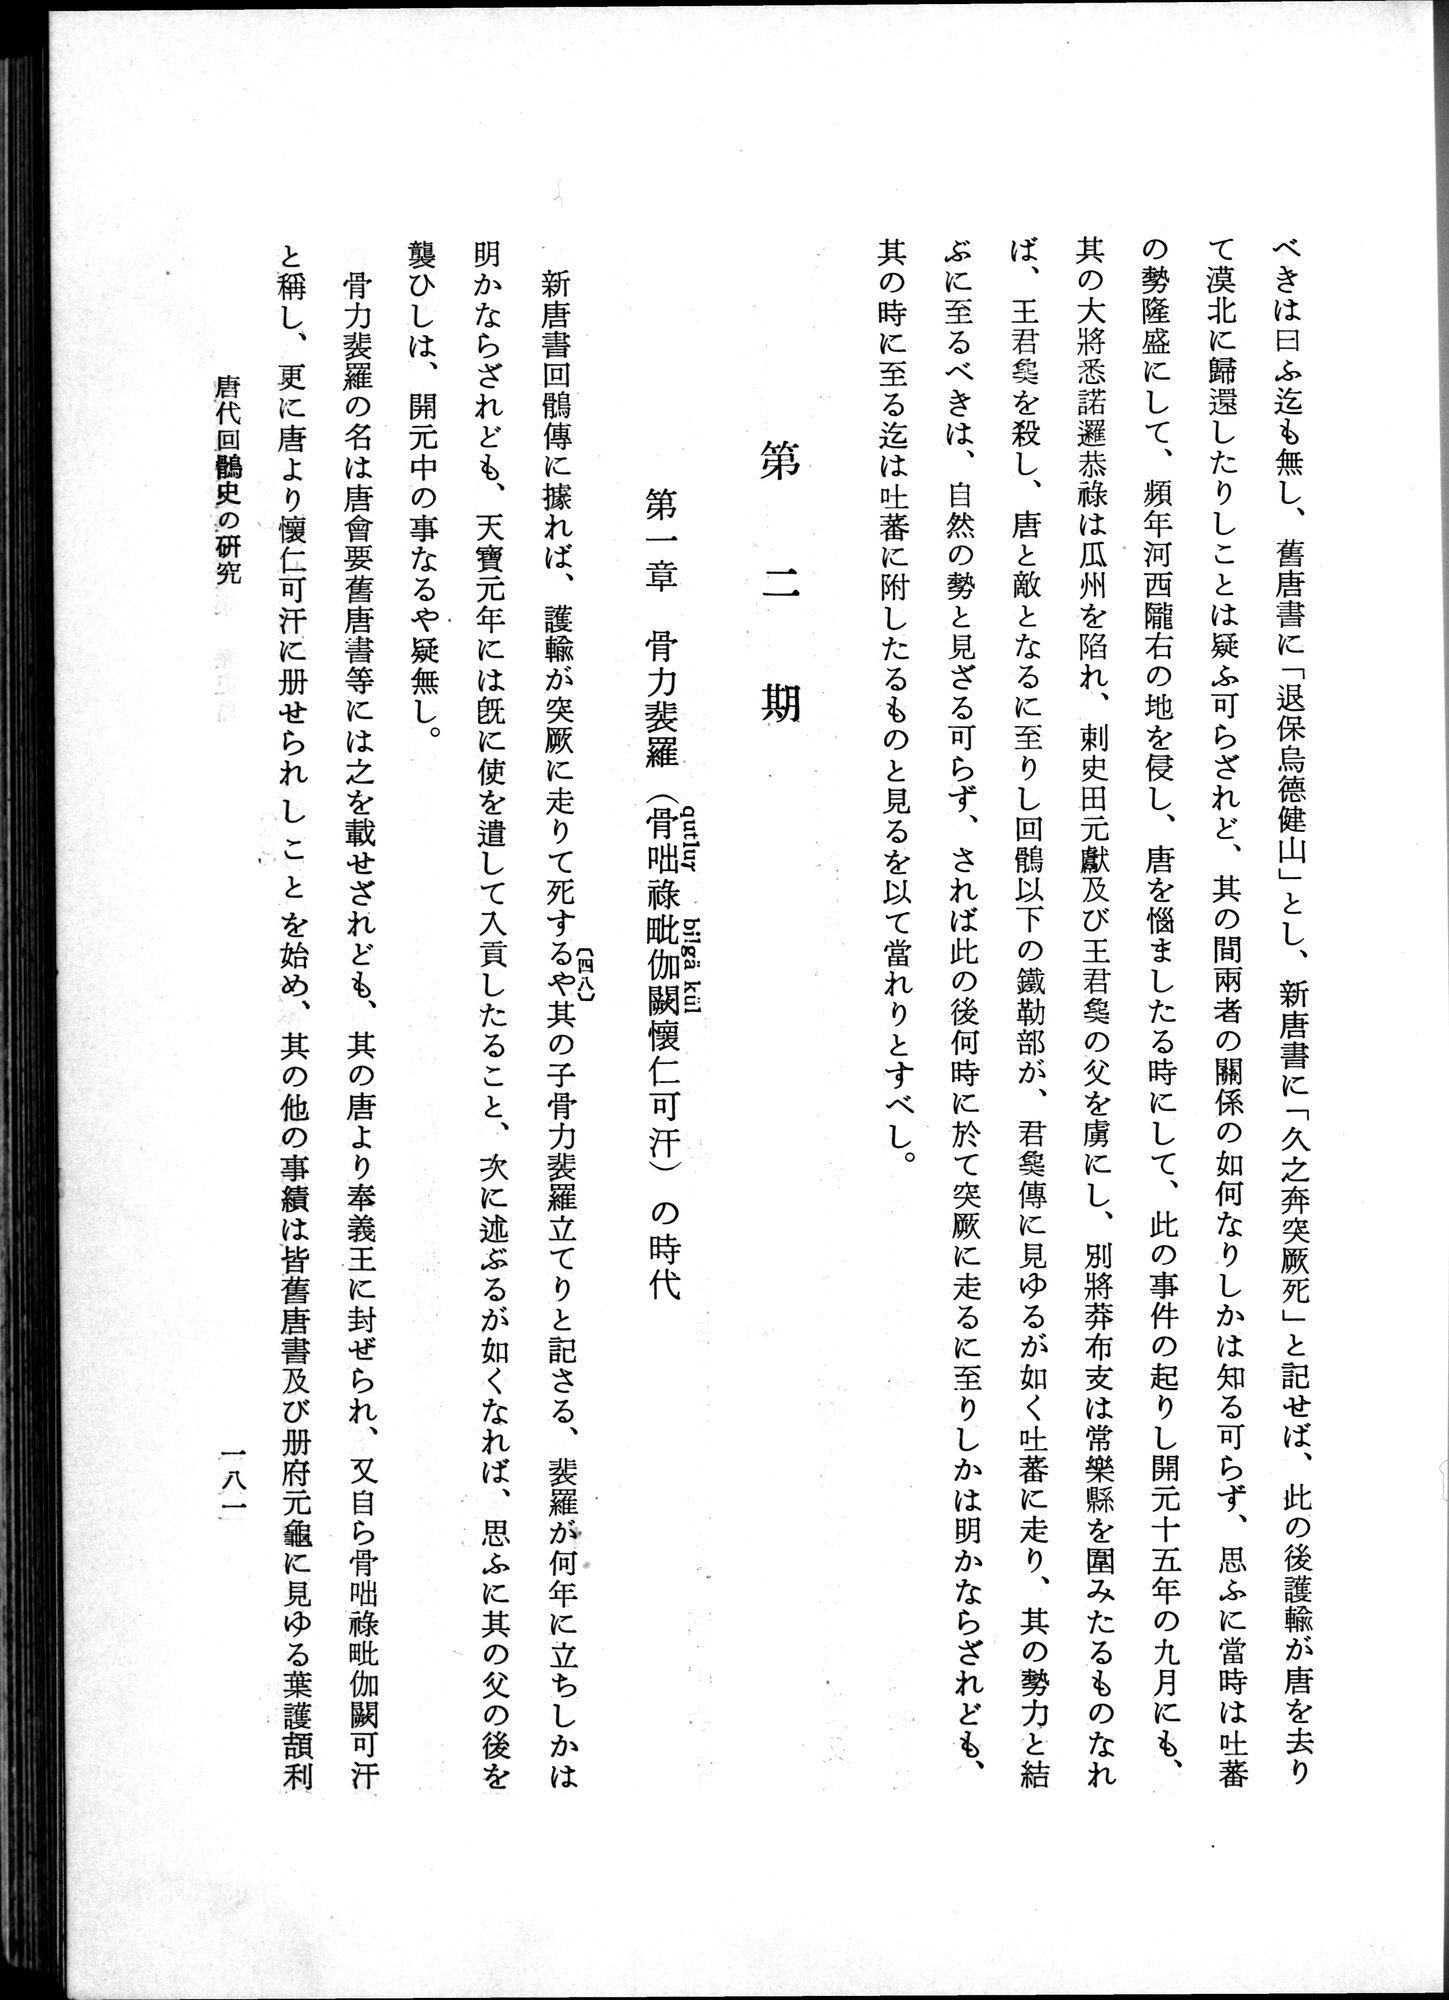 羽田博士史学論文集 : vol.1 / Page 219 (Grayscale High Resolution Image)